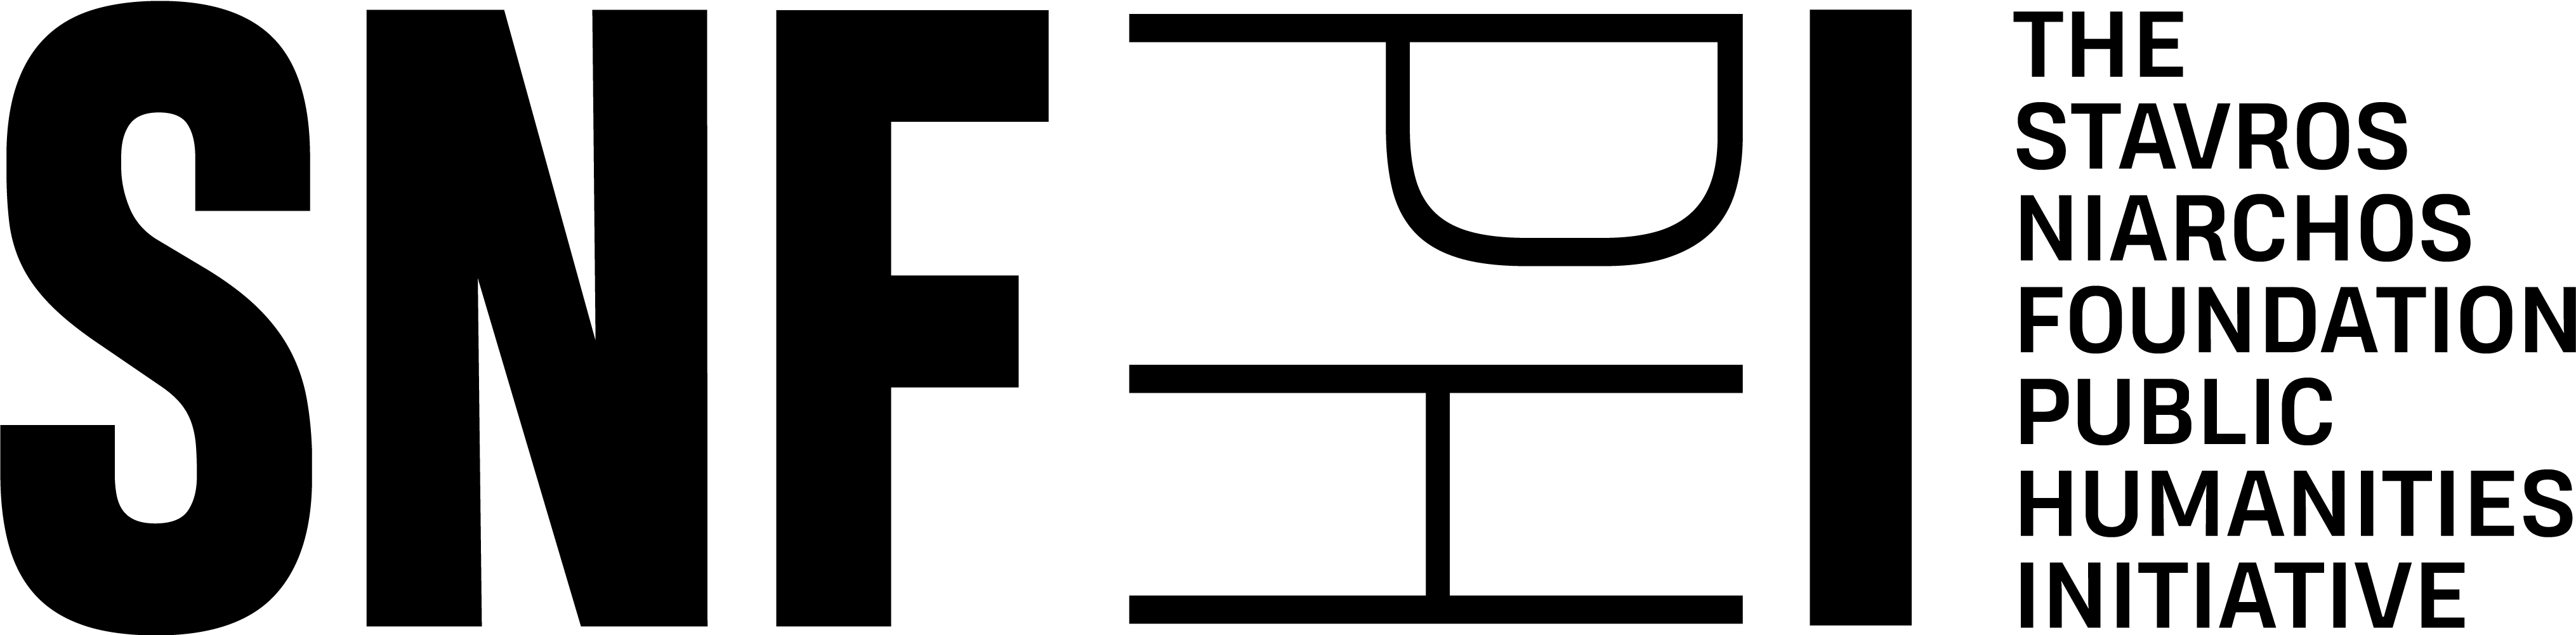 SNFPHI logo horizontal f